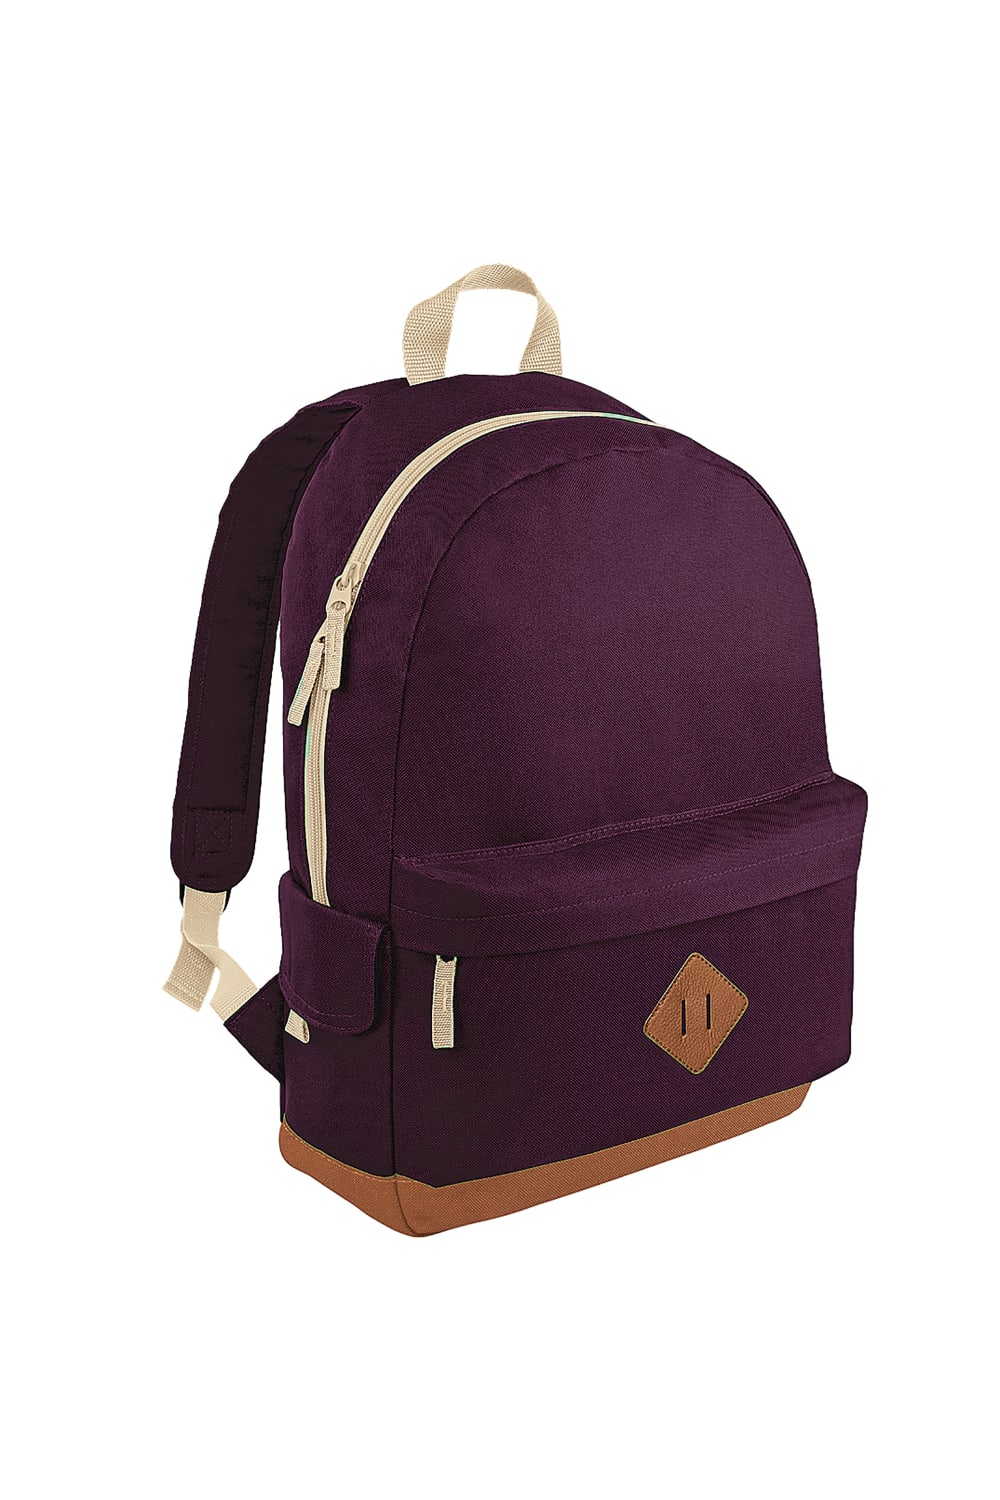 Heritage Retro Backpack/Rucksack/Bag (18 Litres) - Burgundy